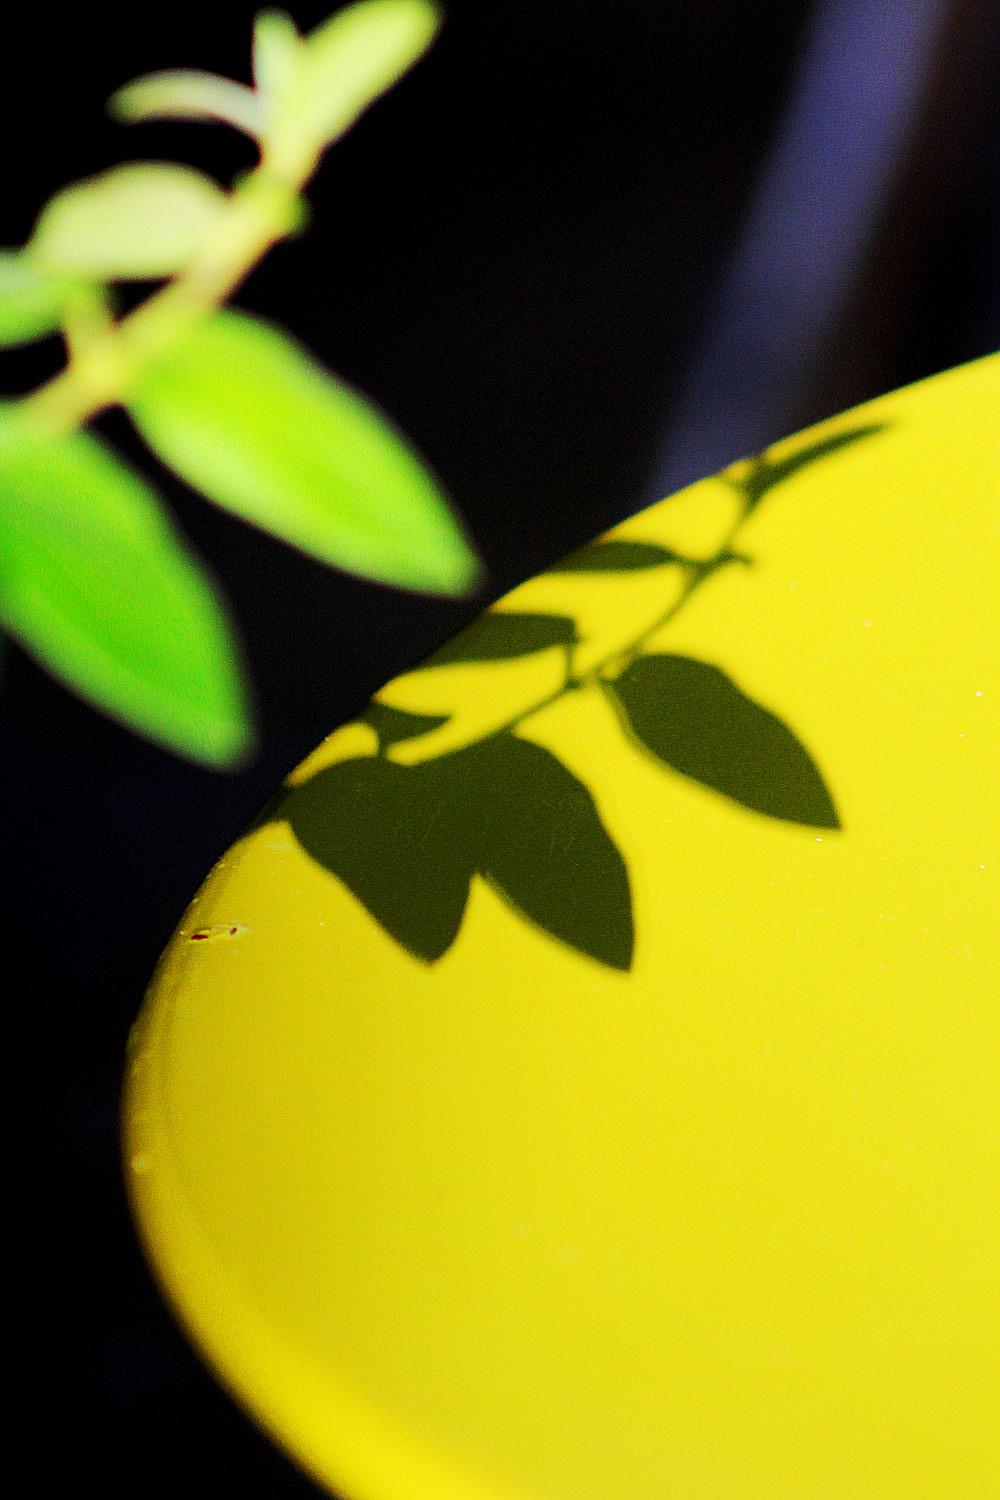 Bellec Figurative Photograph - La table citron